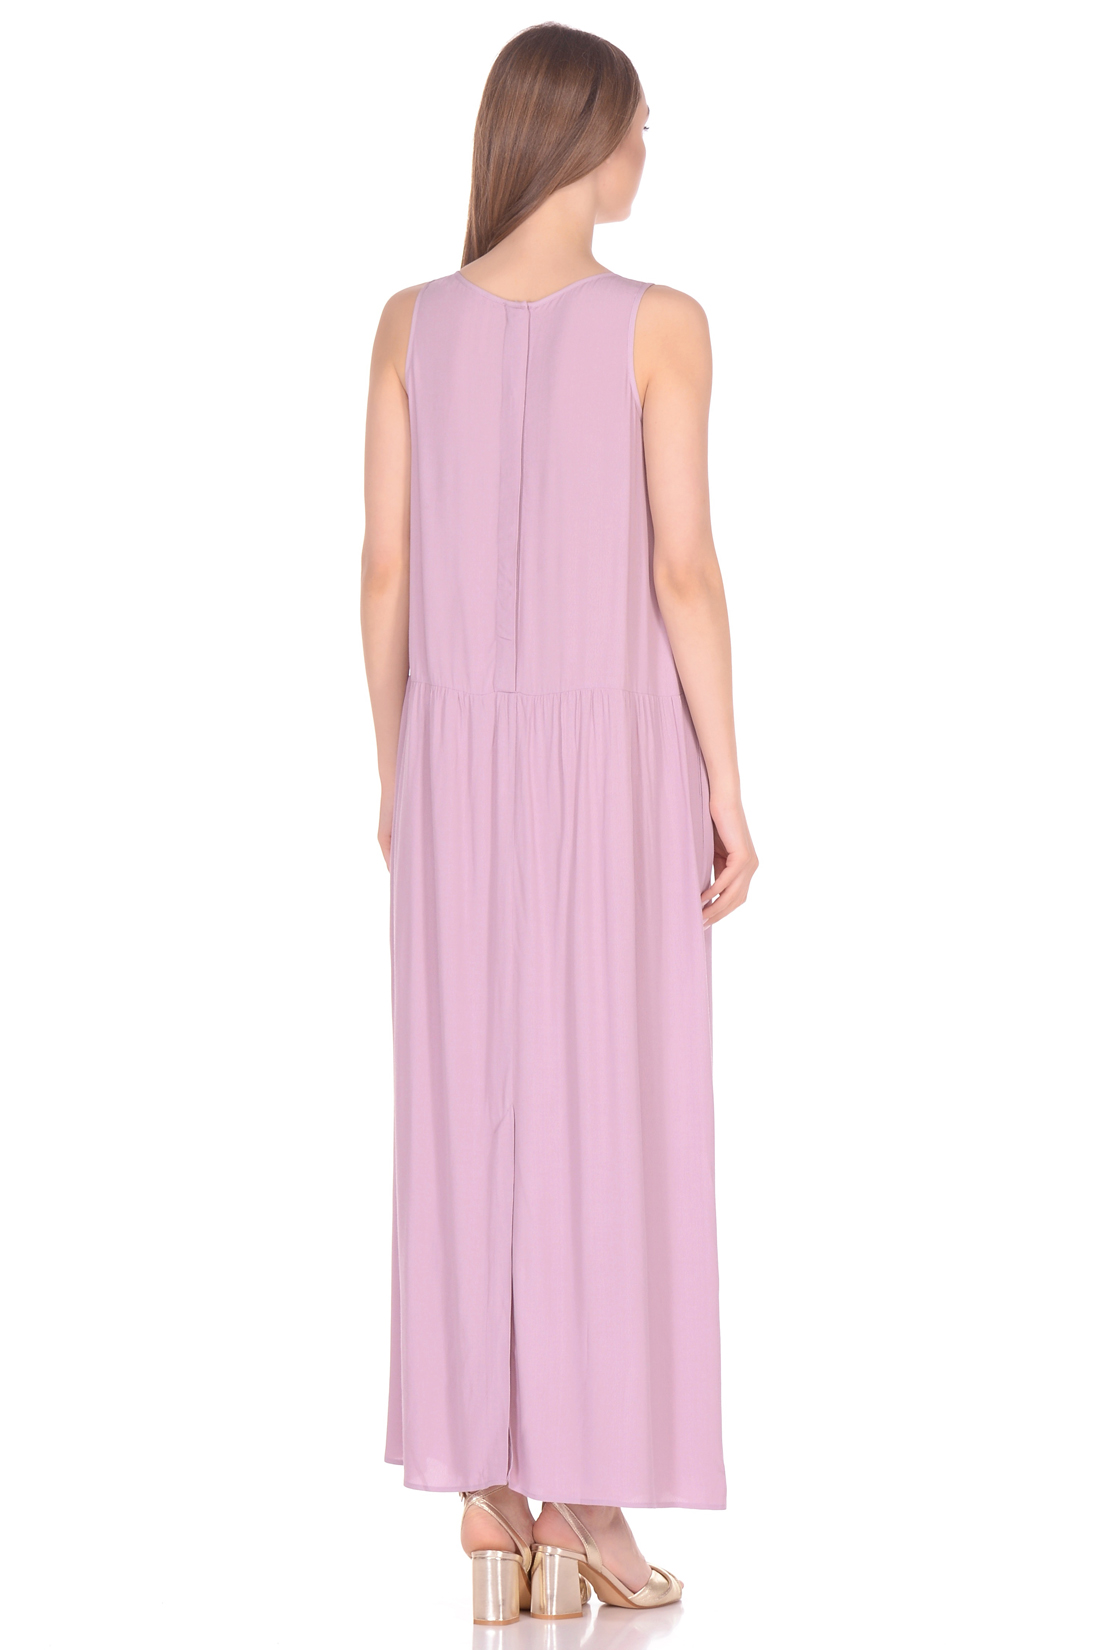 Прямое платье в пол (арт. baon B458084), размер XL, цвет розовый Прямое платье в пол (арт. baon B458084) - фото 2